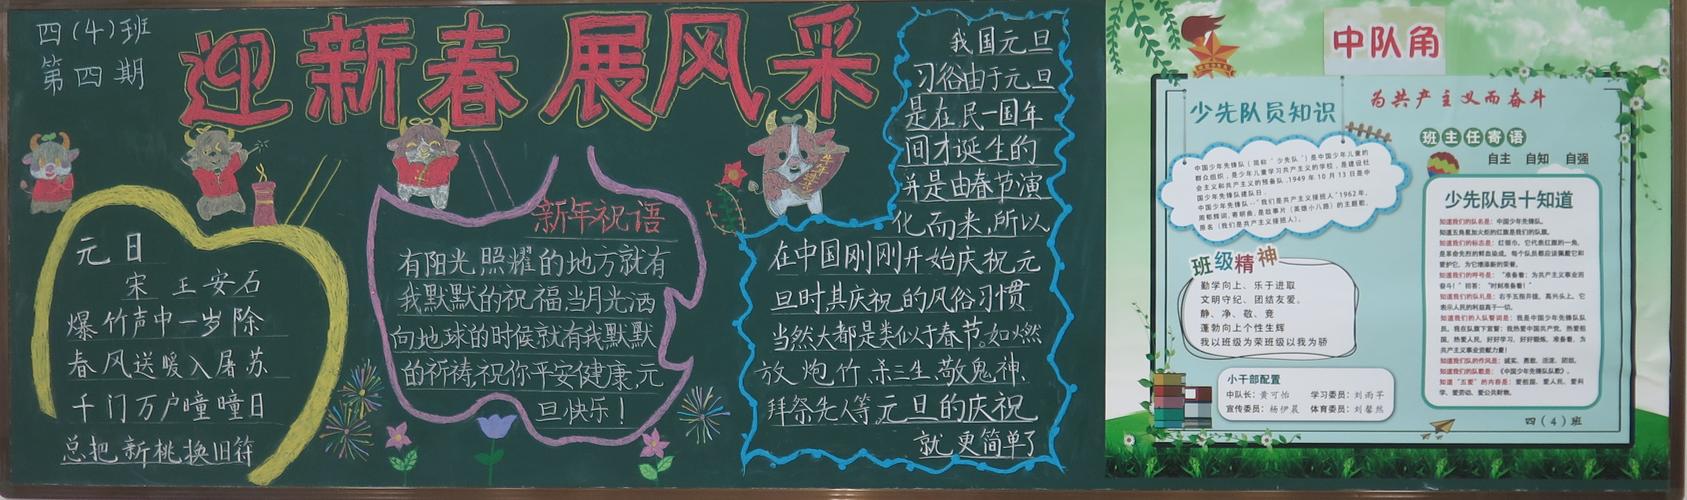 木棉湾学校第四期喜迎新年快乐出发优秀黑板报展示